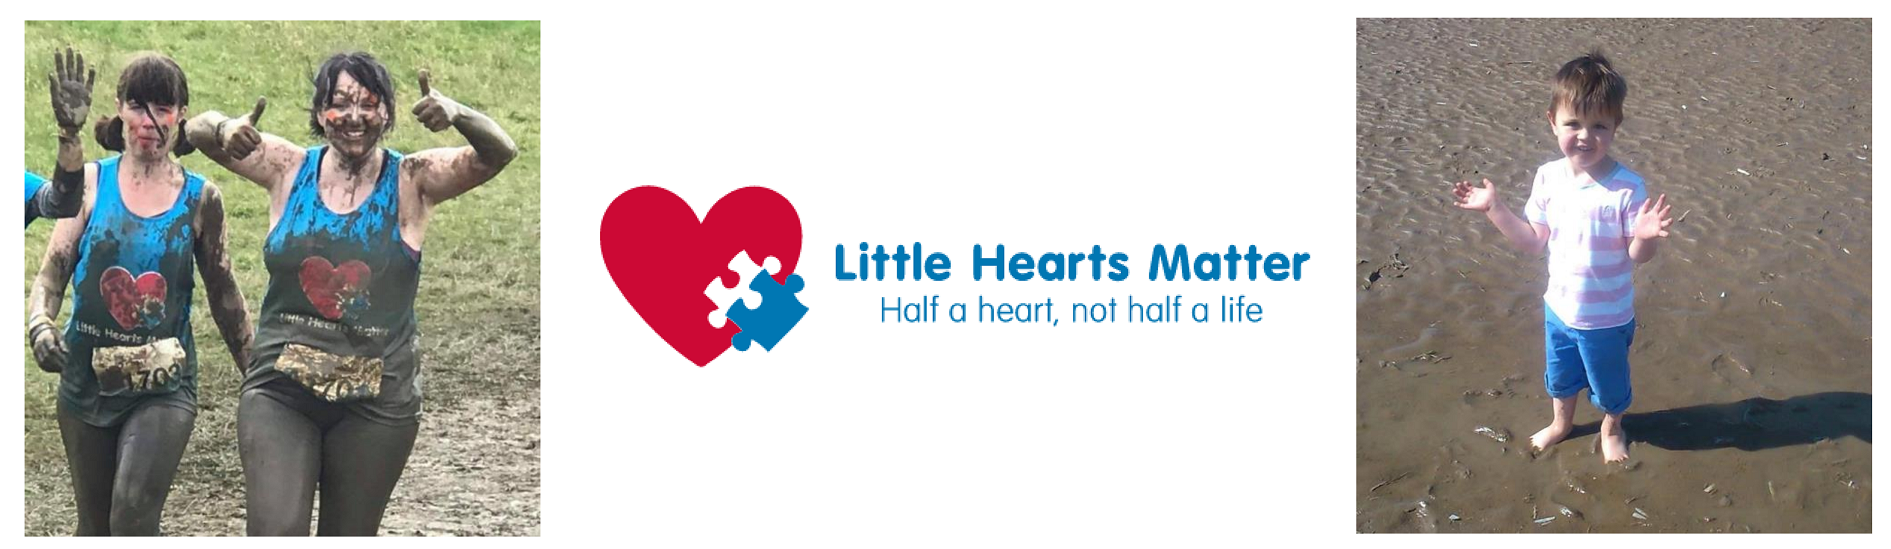 little hearts matter